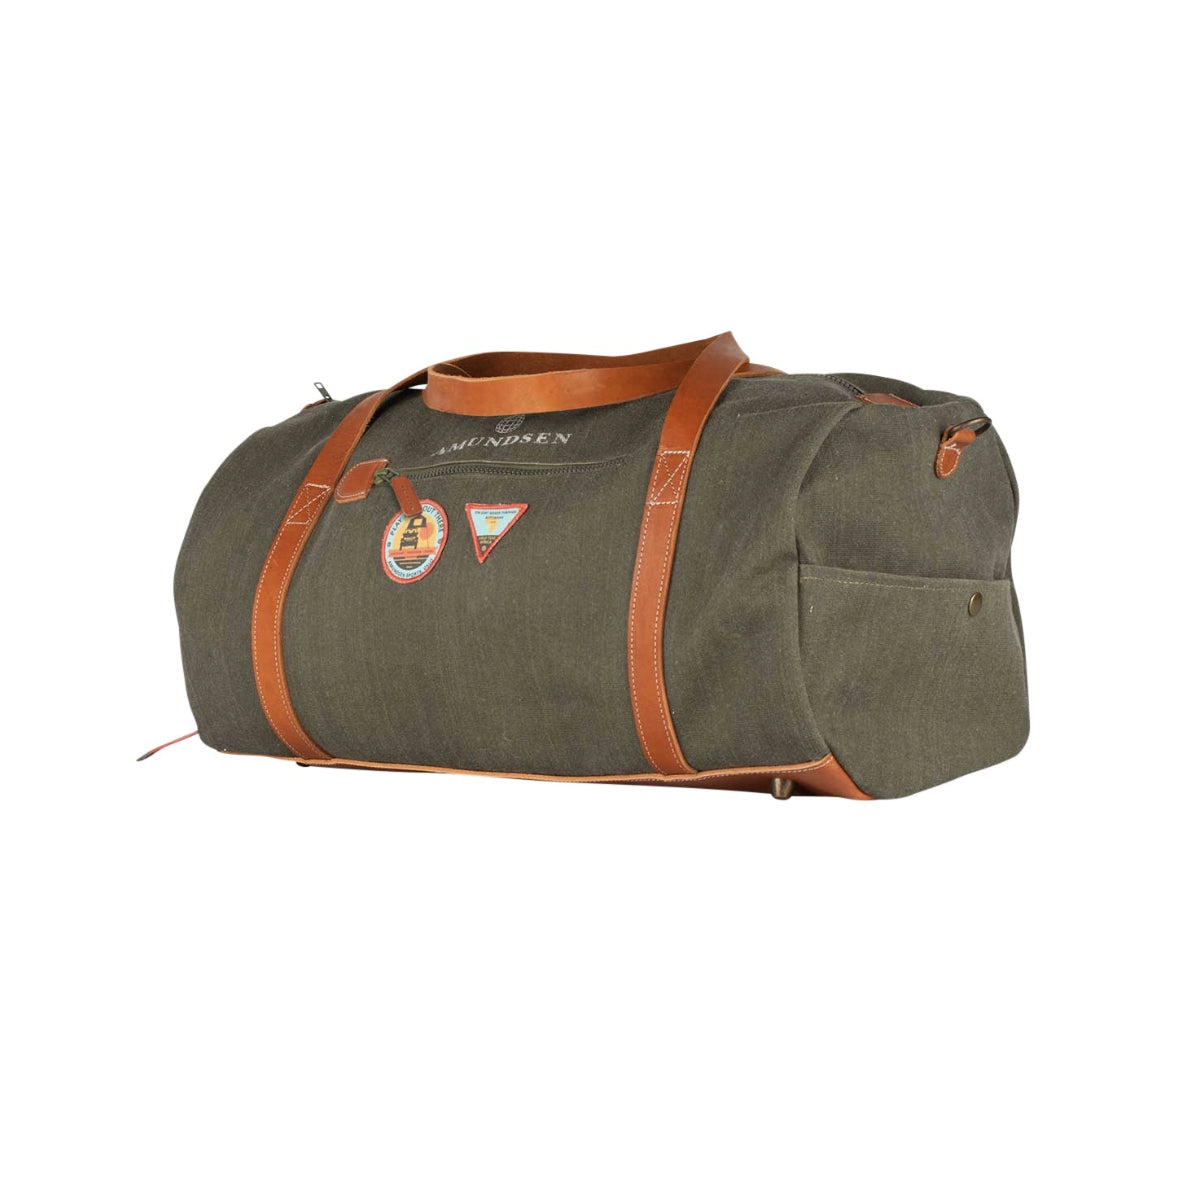 Amundsen Sports - Okavanga Duffel Bag 65L - Nato